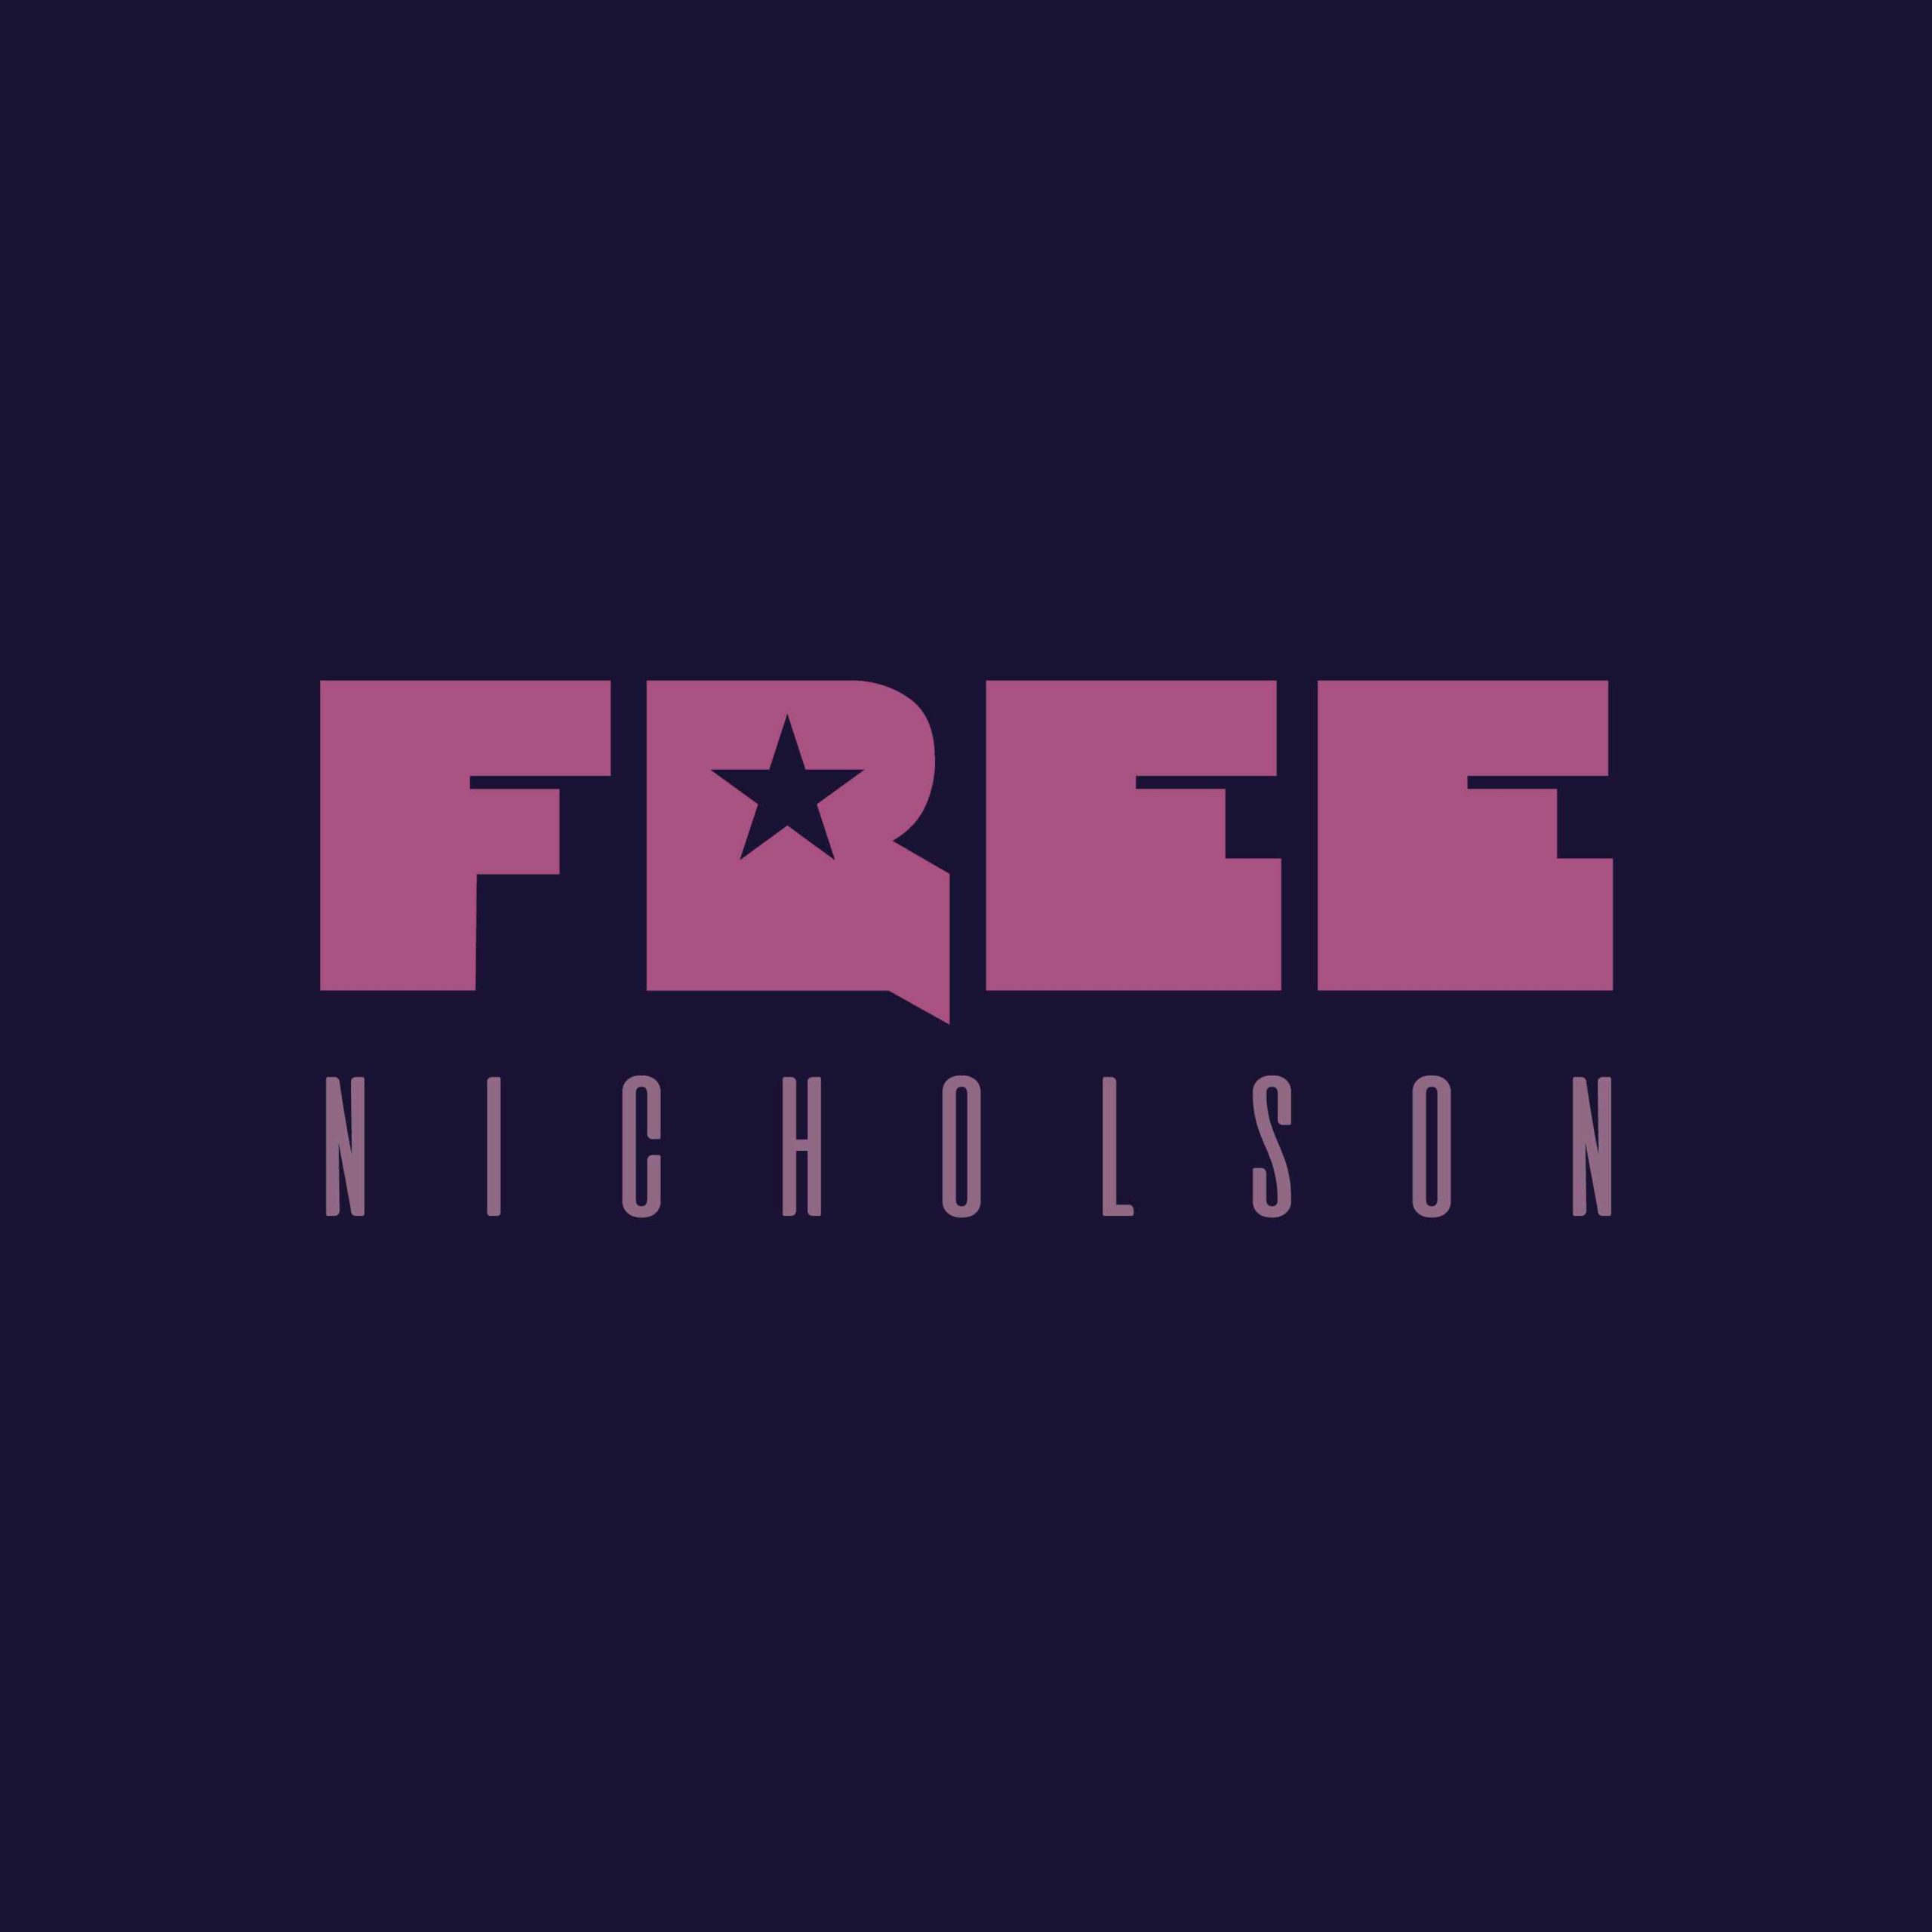 Free - Nicholson